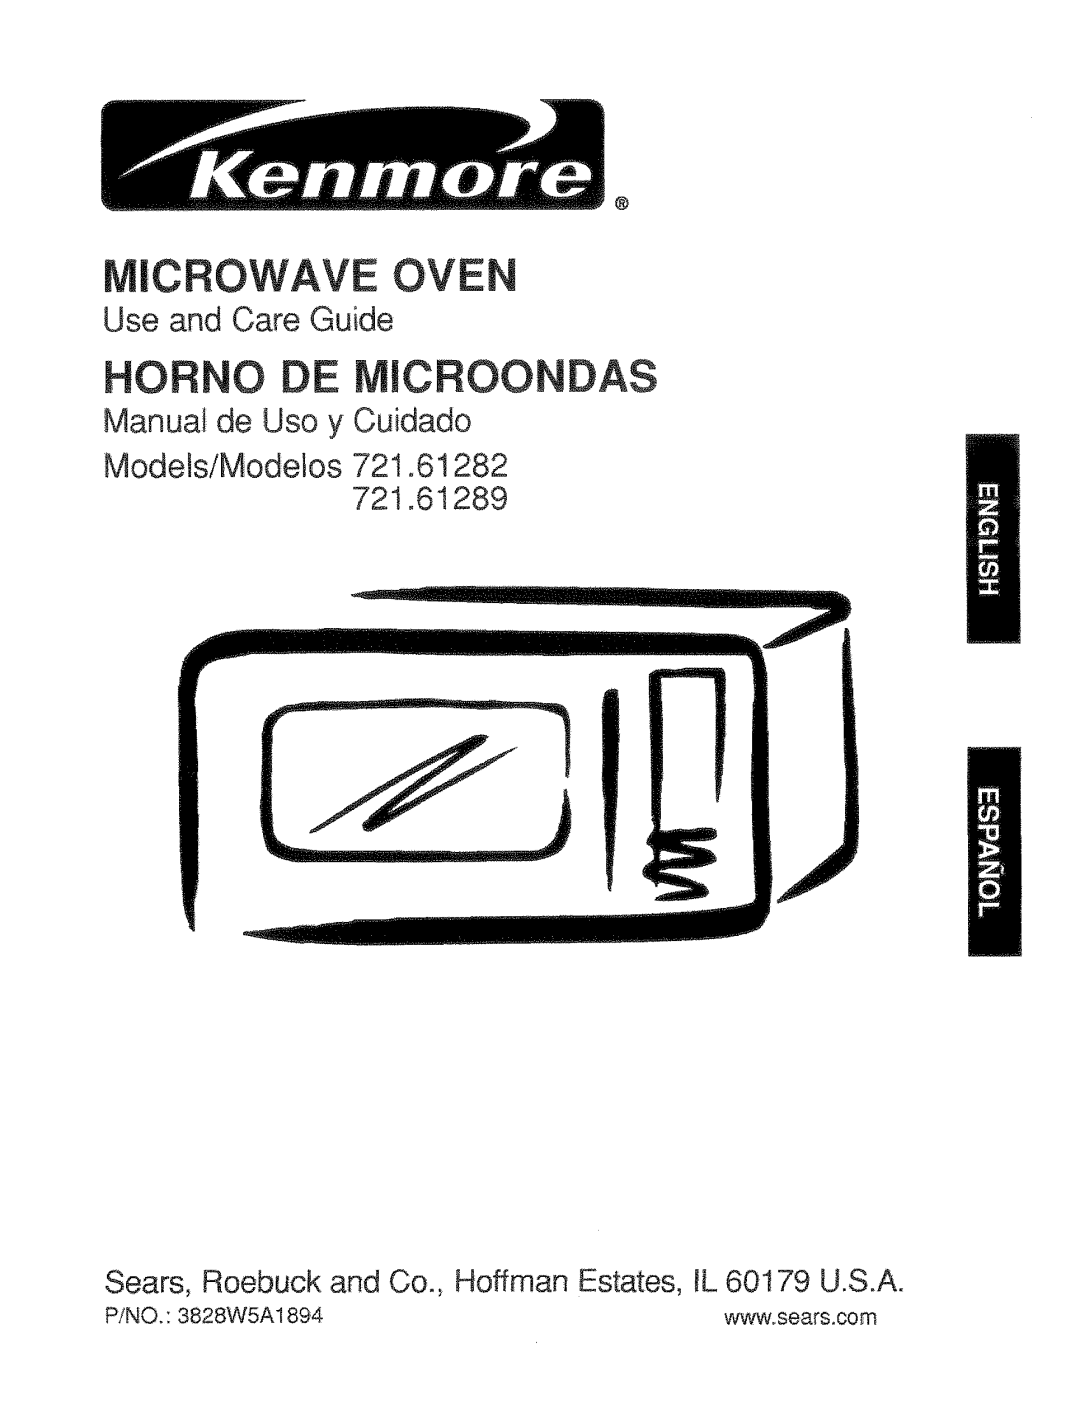 Kenmore 721.61289 manual Cfiowave Oven, Hofino Microondas, Use and Care Guide, Manual de Uso y Cuidado, P/NO. 3828WSA1894 